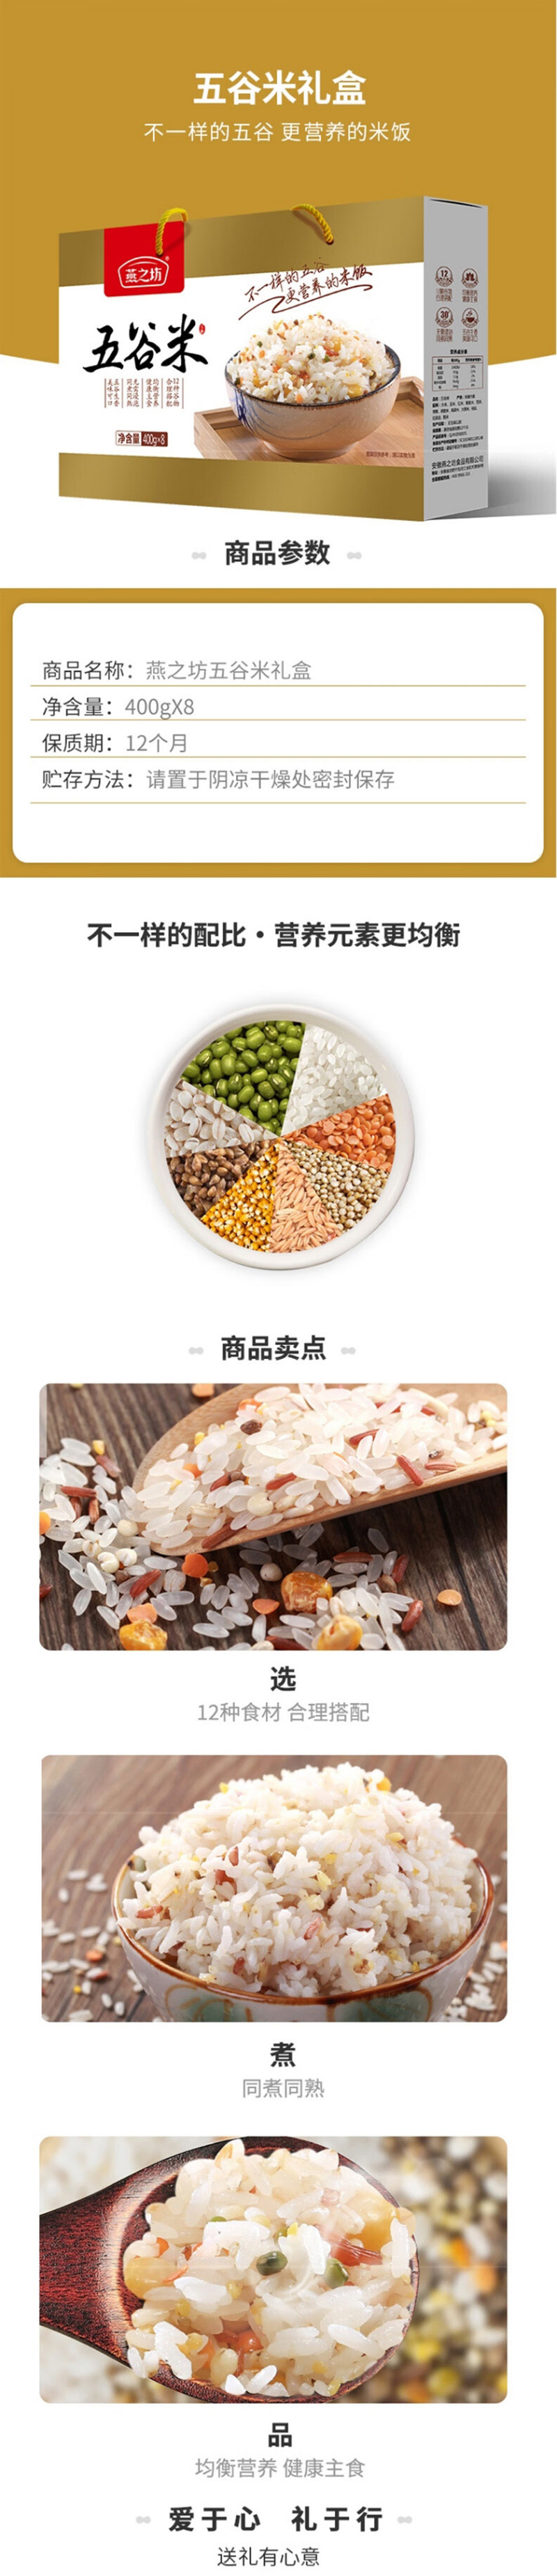 燕之坊 五谷米粗粮礼盒3.2kg